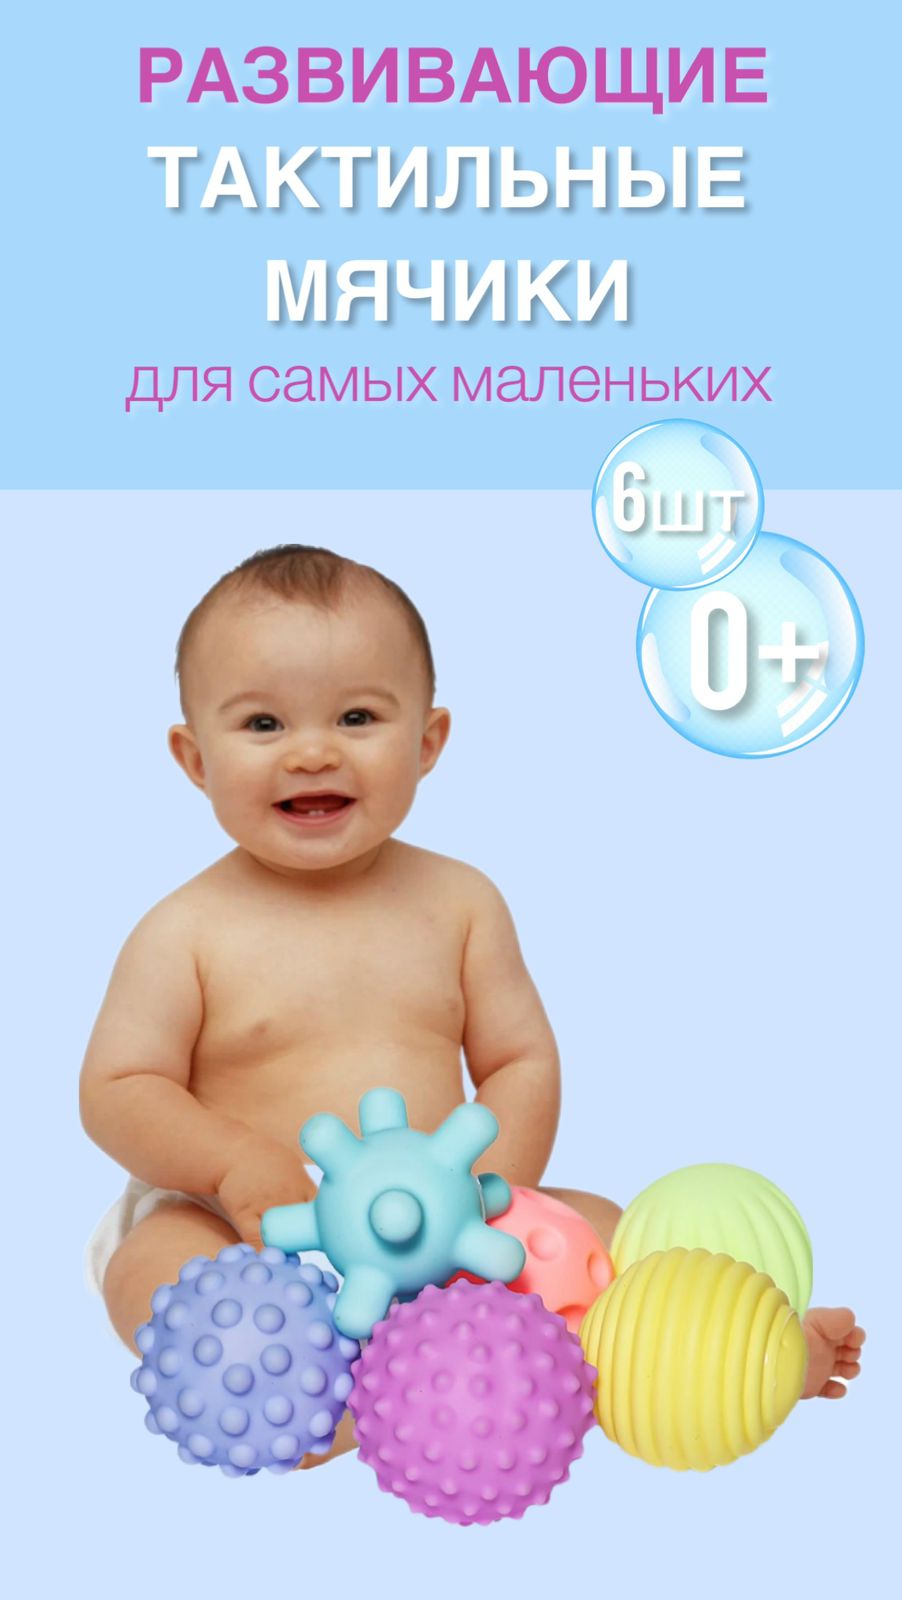 Набор развивающих тактильных мячиков ELZA-CALIN для ванной и купания малышей, 6шт с